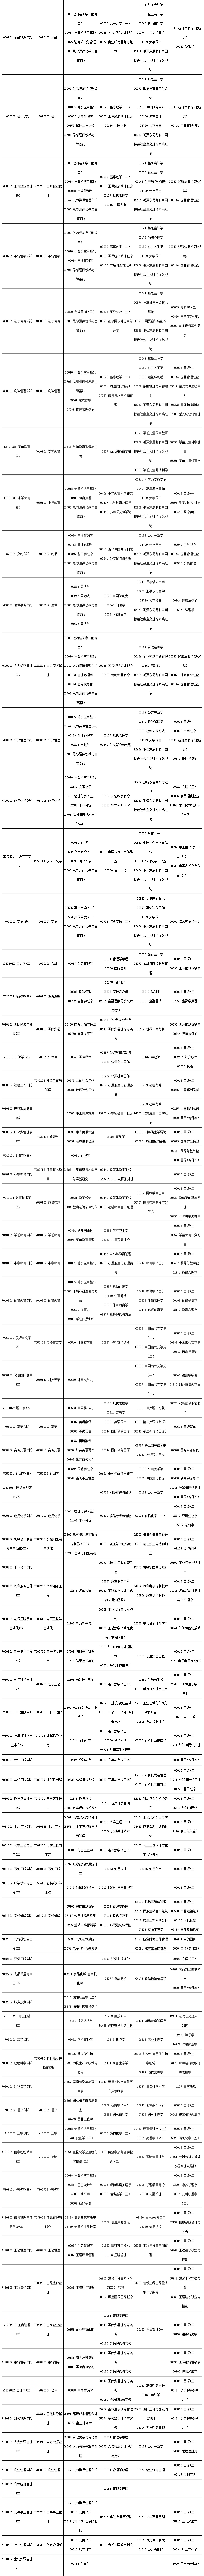 2023年10月四川自考考试课表